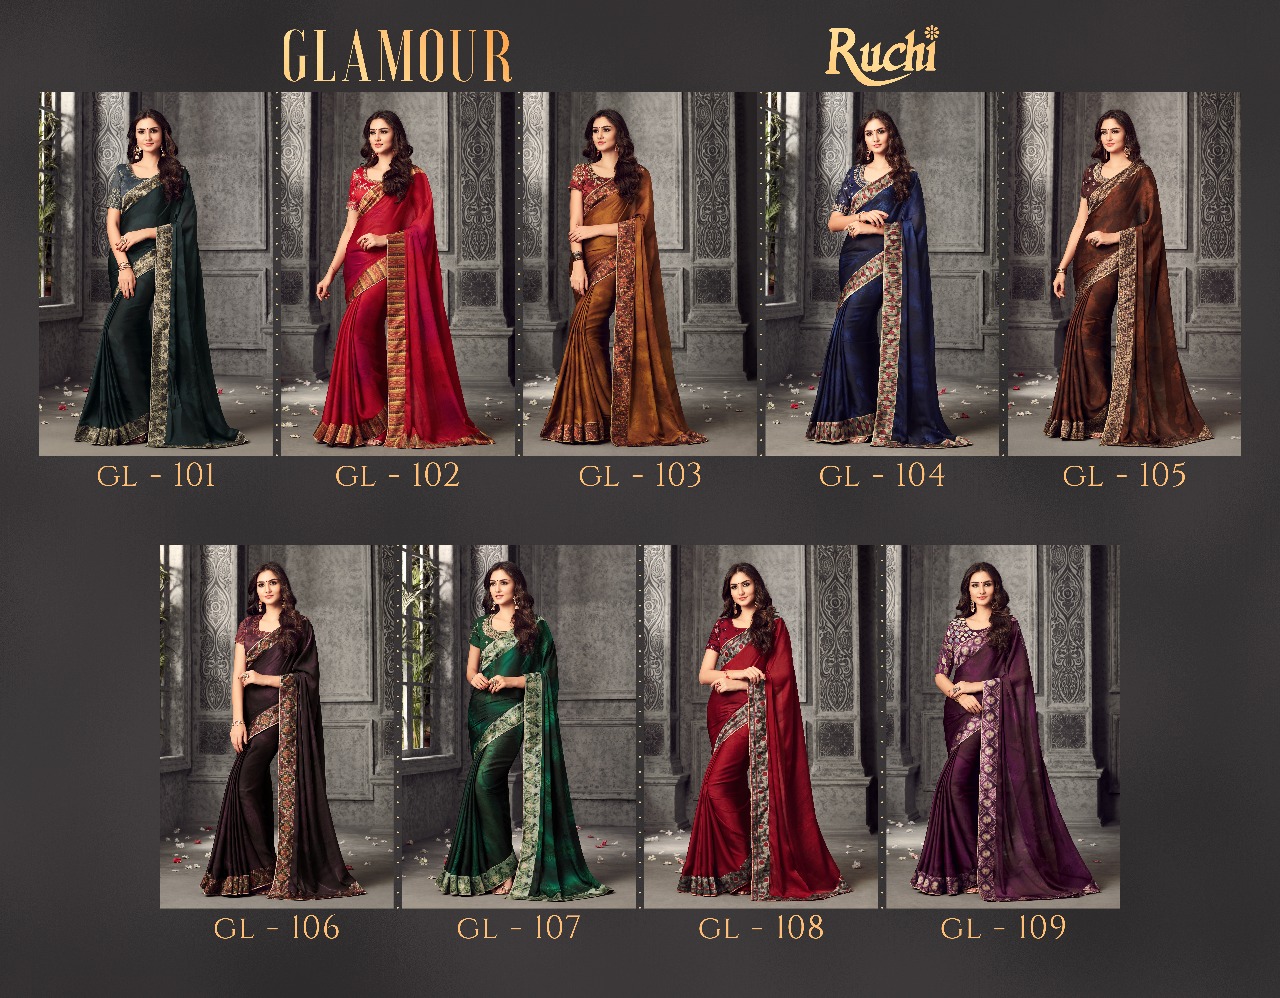 Ruchi Sarees Glamour Satin Patta Designer Sarees Catalog Wholesale Rate Supplier At Surat